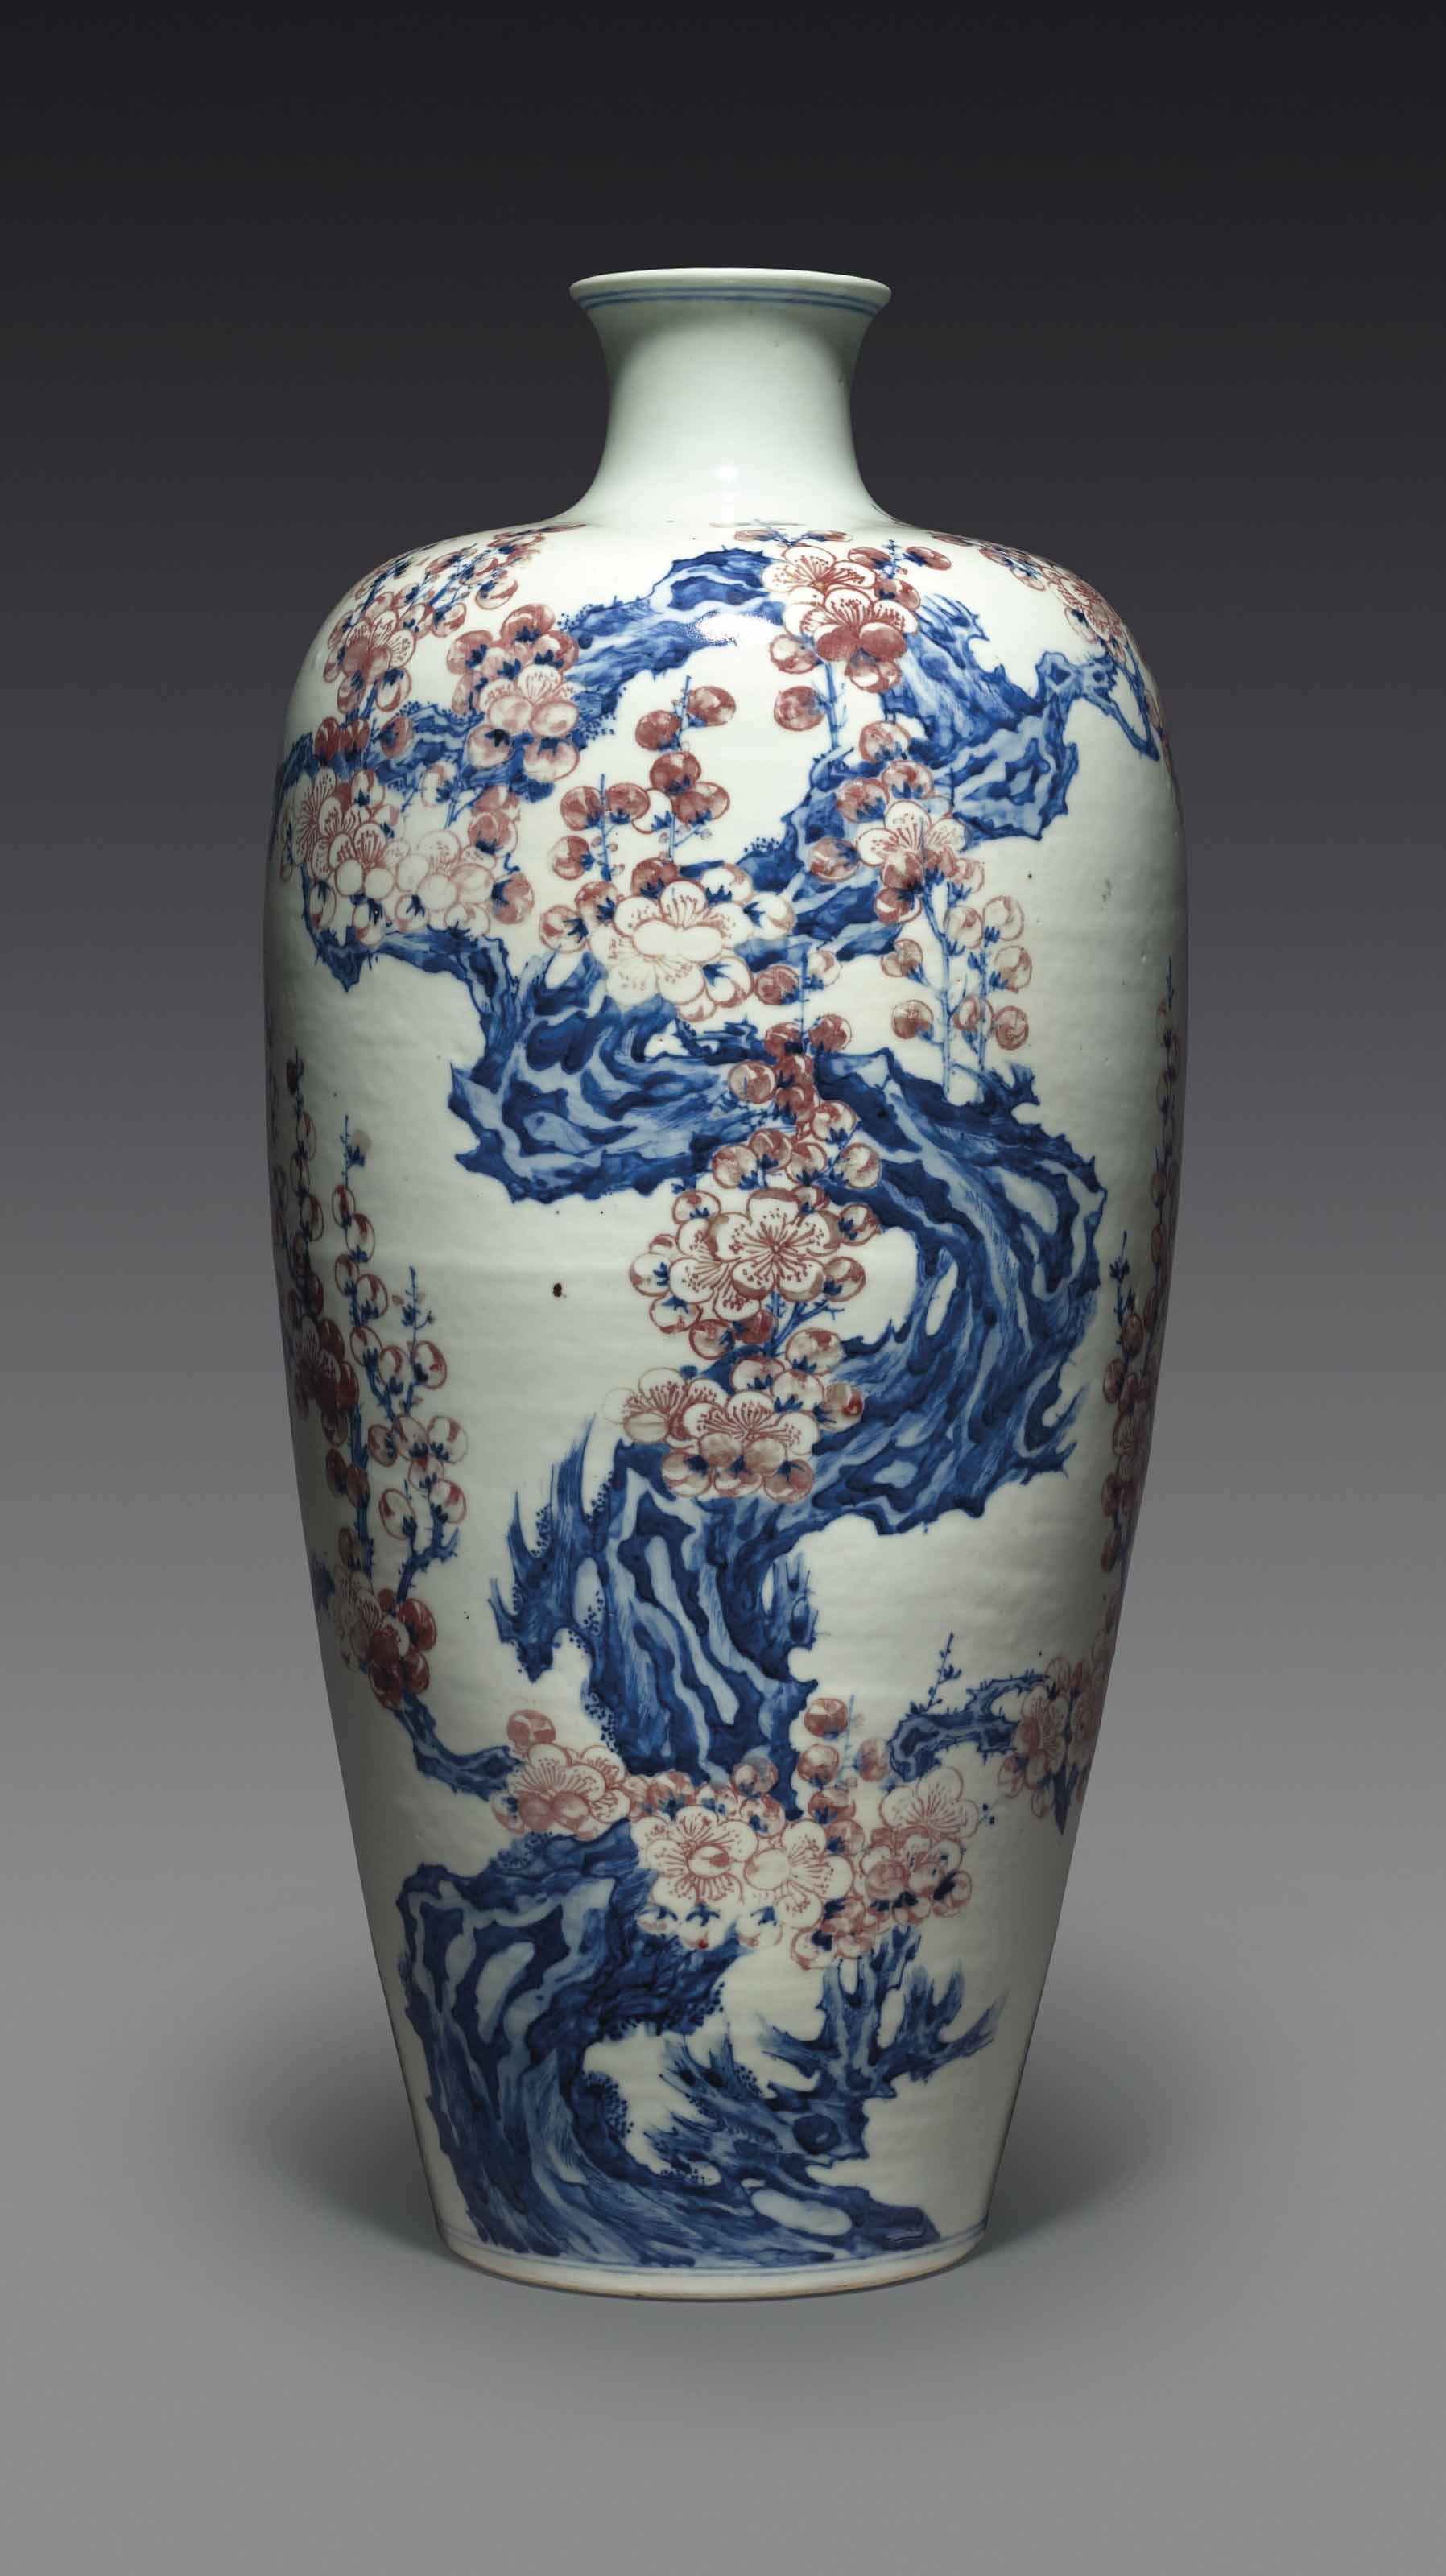 拍品207 清十八世紀 青花釉裡紅梅花紋梅瓶